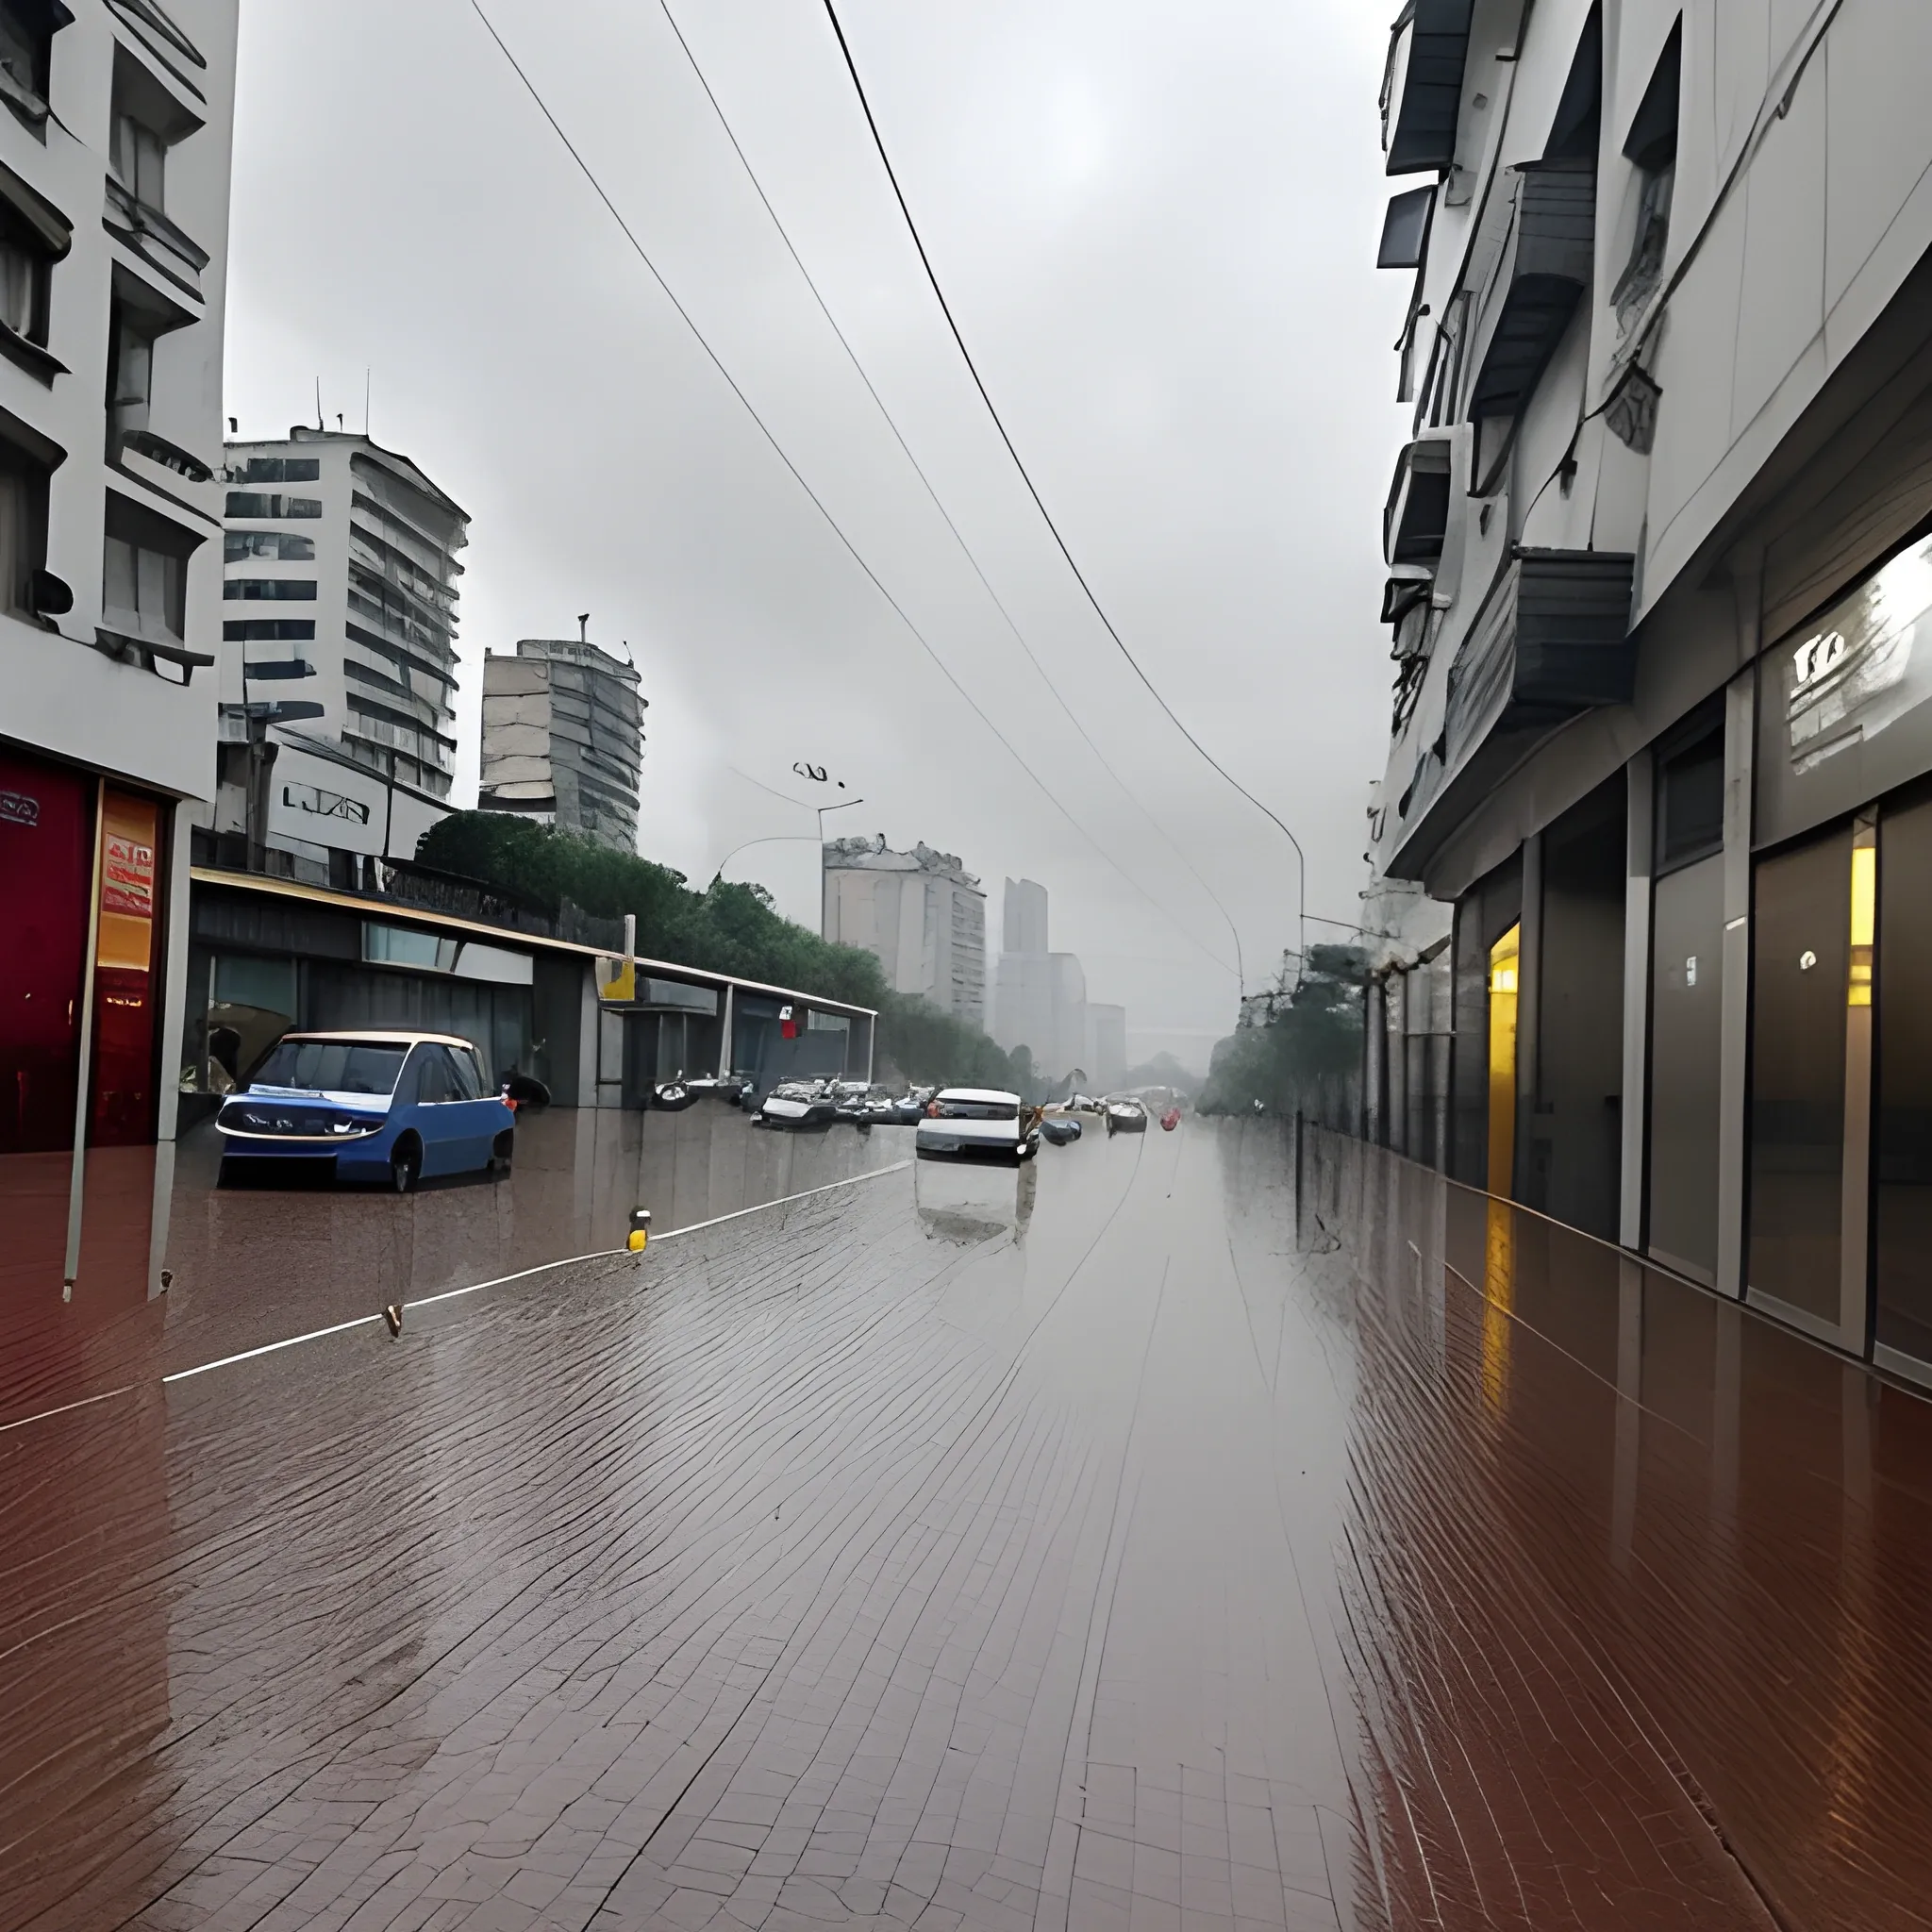 lluvia en la ciudad en el dia